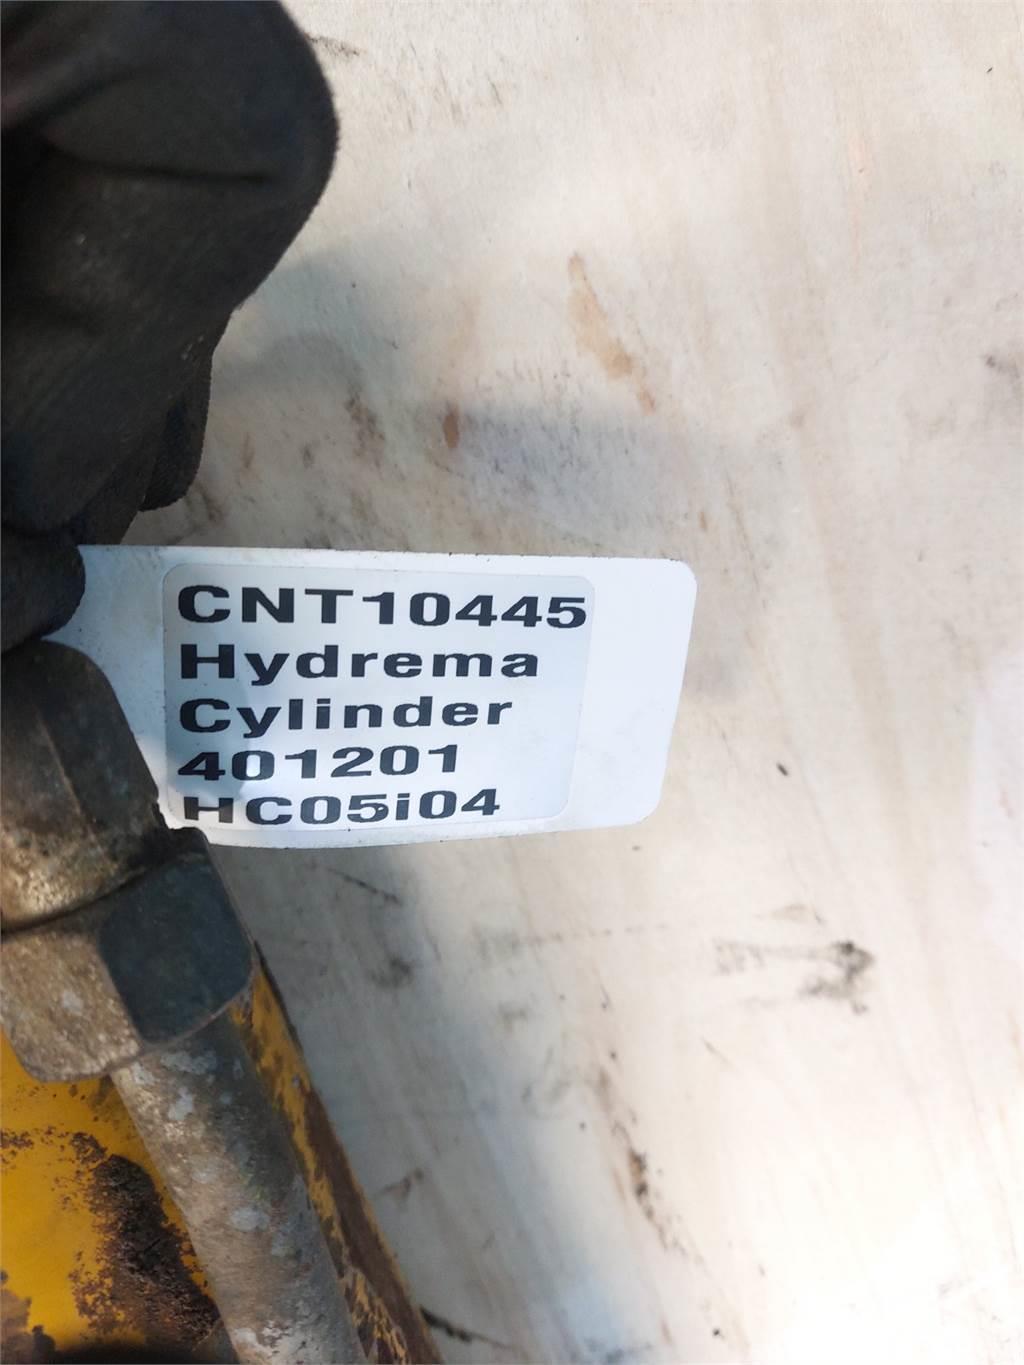 Hydrema 906C Plataformas y cucharones